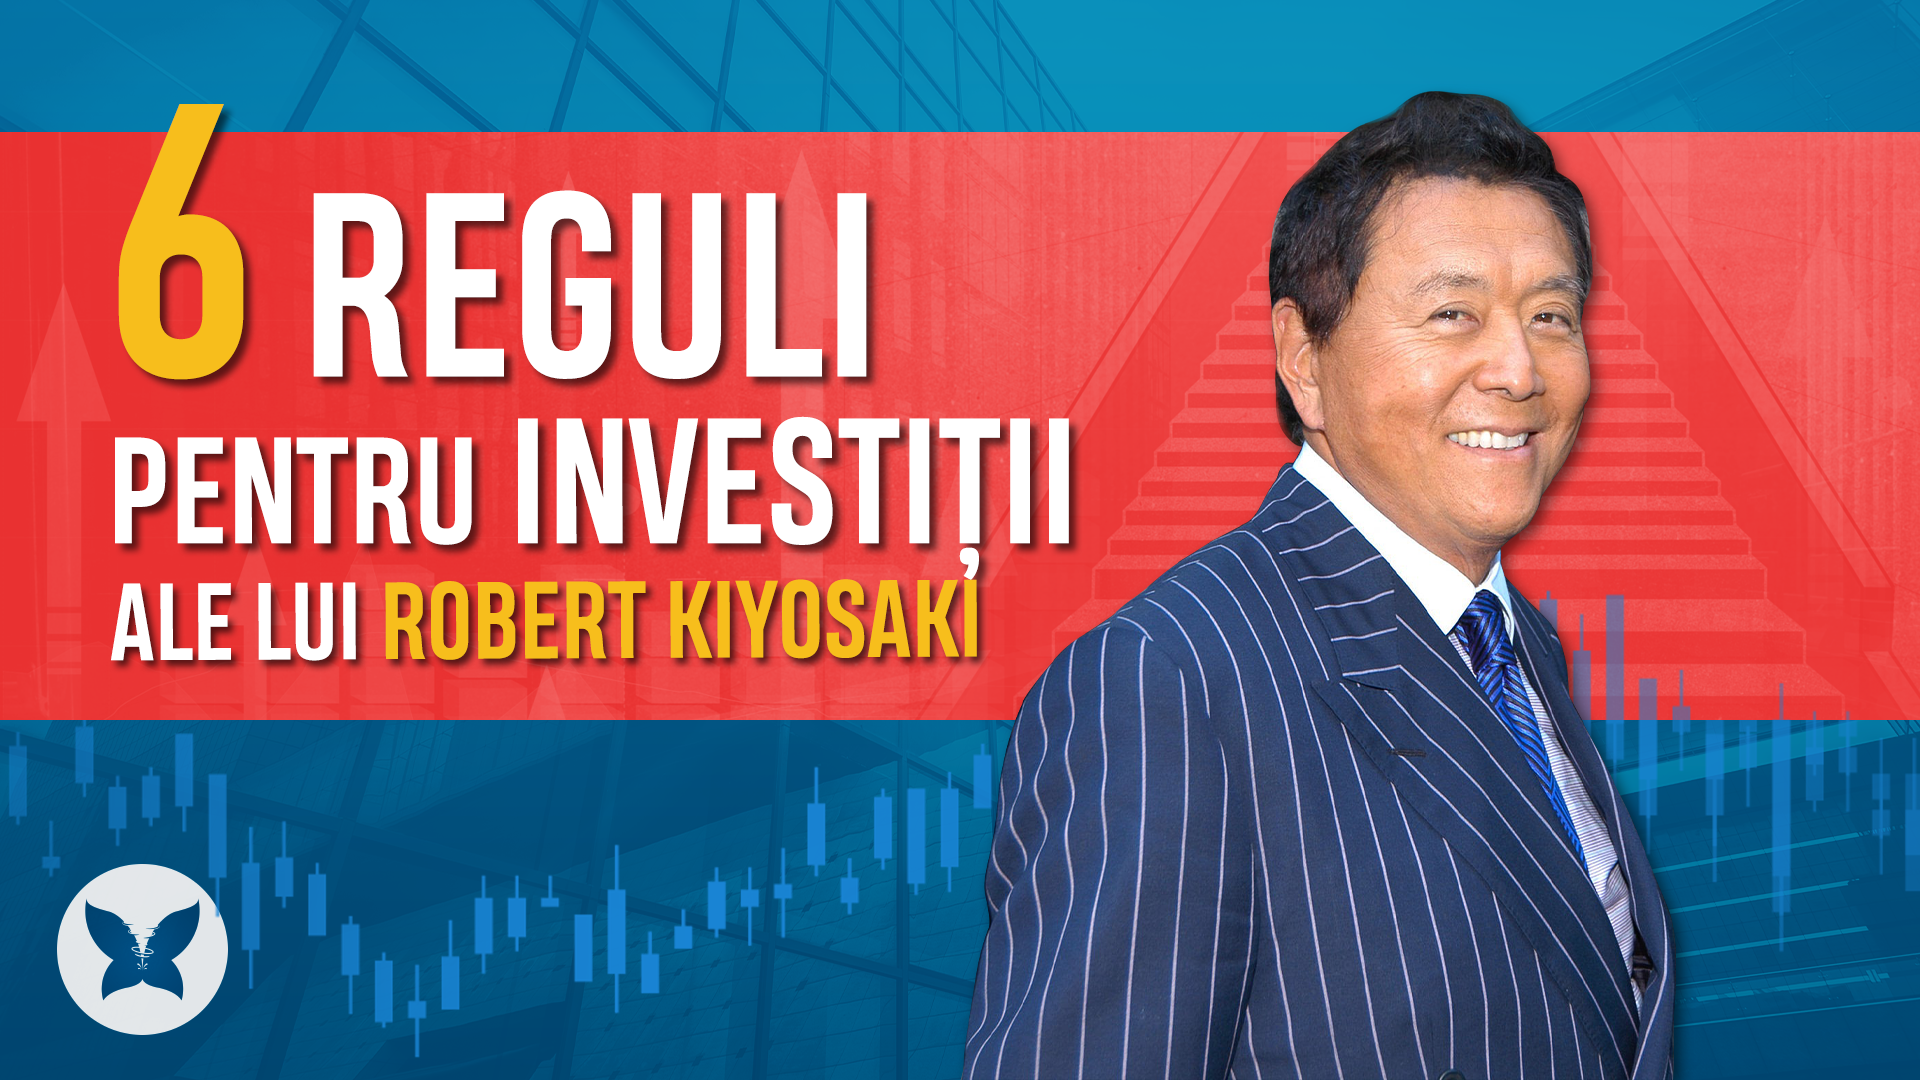 Cele 6 reguli pentru investiții ale lui Robert Kiyosaki